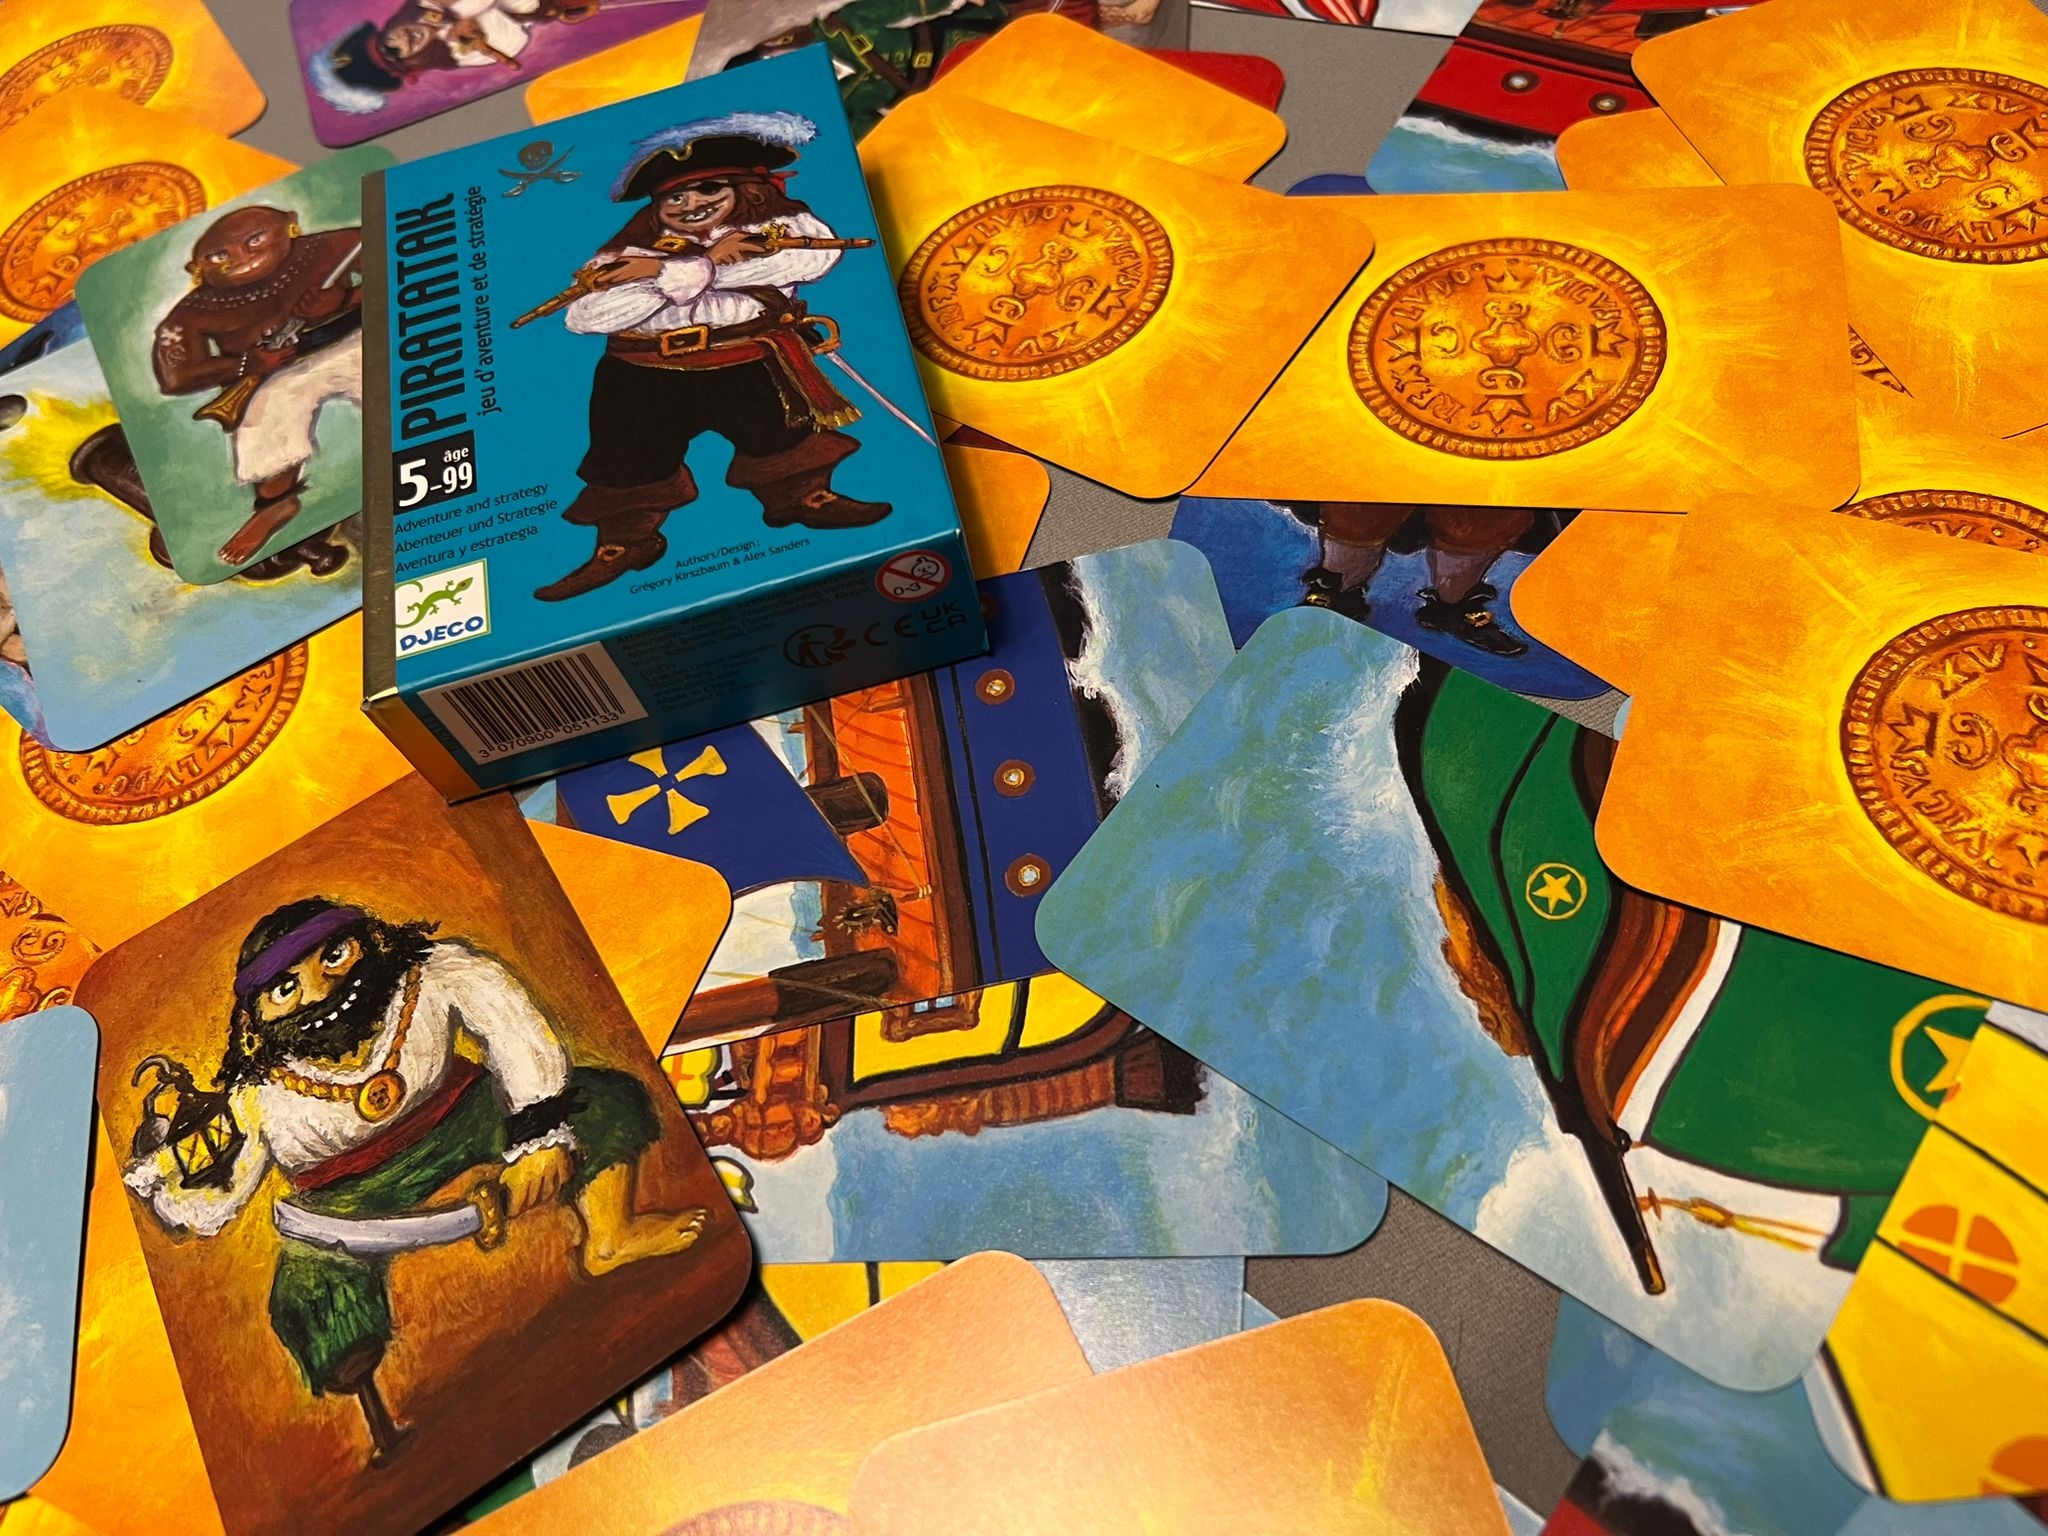 Kartenspiel mit Piratenkarten und vielen Goldmünzenkarten. Die Karten liegen offen und durcheinander auf einen breiten Haufen zusammengeschoben auf dem Tisch